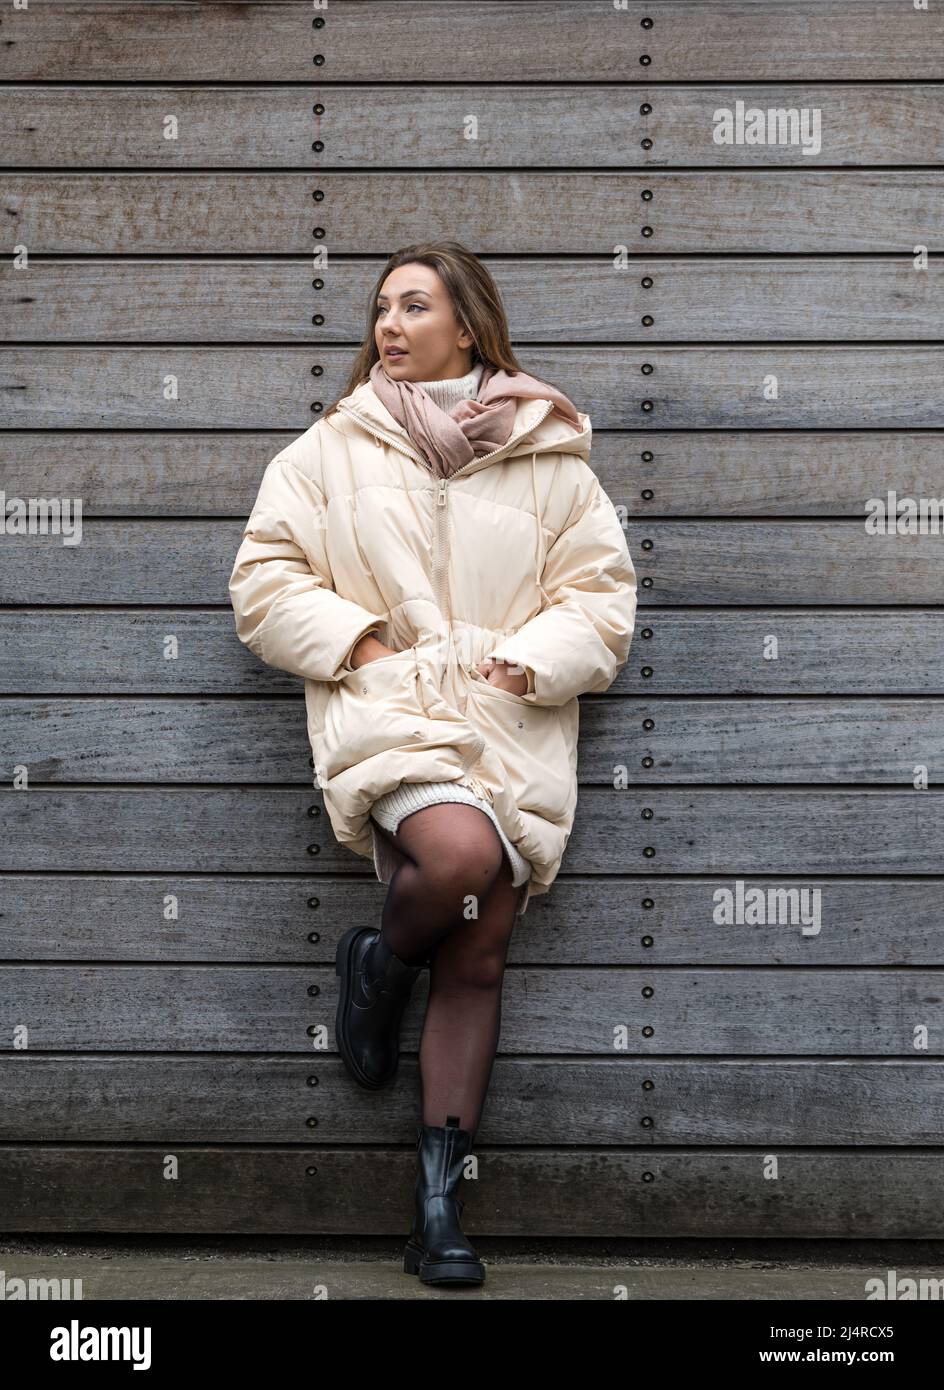 Eine hübsche junge Frau oder ein Model, die eine Winterjacke an einer Wand trägt, Edinburgh, Schottland, Großbritannien Stockfoto